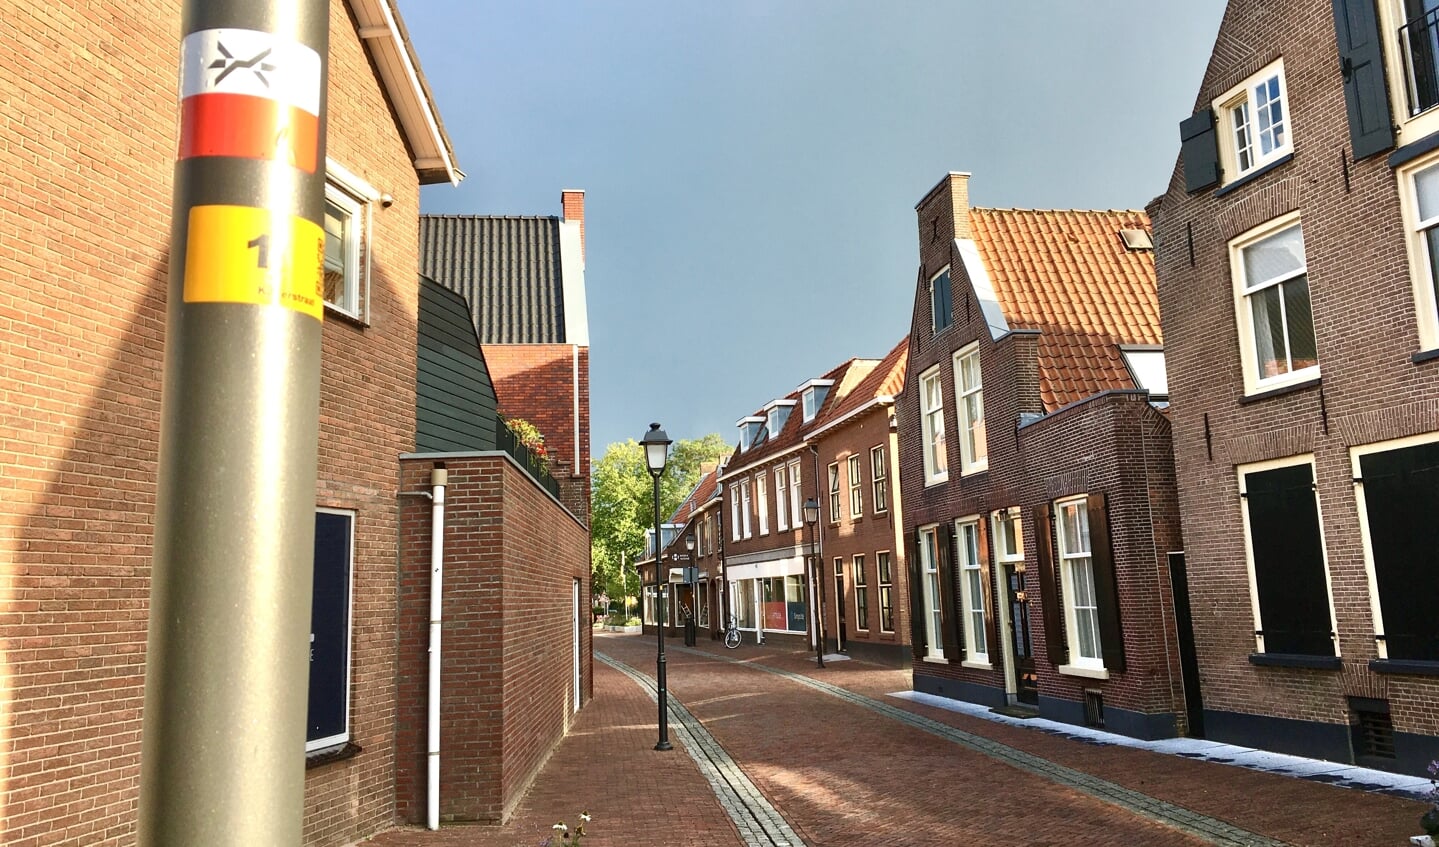 De wandelingen op 20 oktober lopen onder meer door de Kleterstraat. De wit- met rode sticker op de lantaarnpaal markeert het Westerborkpad, het langeafstandswandelpad in het teken van de Jodenvervolging.